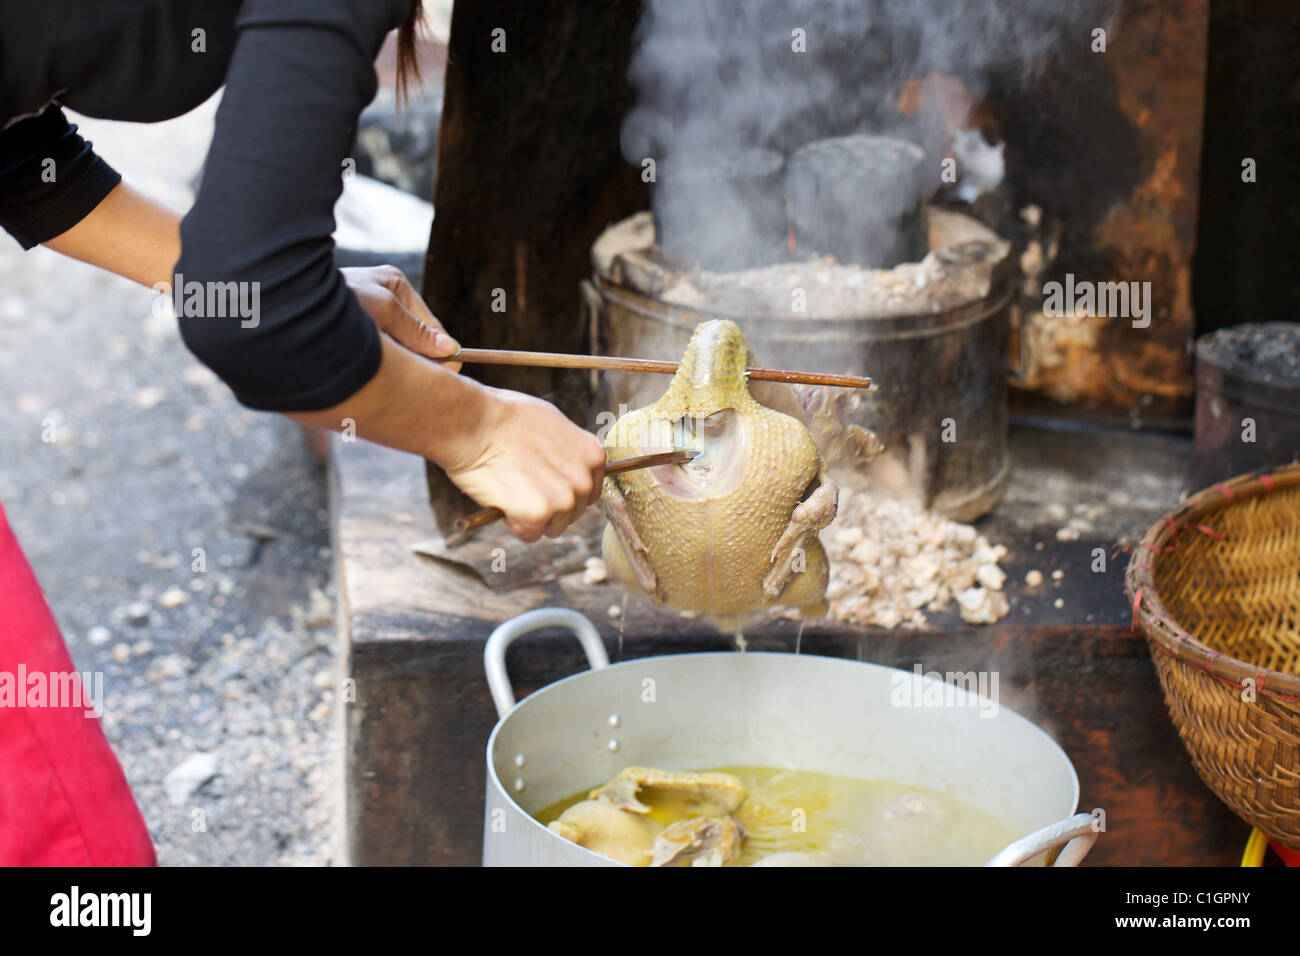 Eine gekochte Ente ergibt sich aus dem Topf in eine Straßenküche, Hanoi, Vietnam Stockfoto